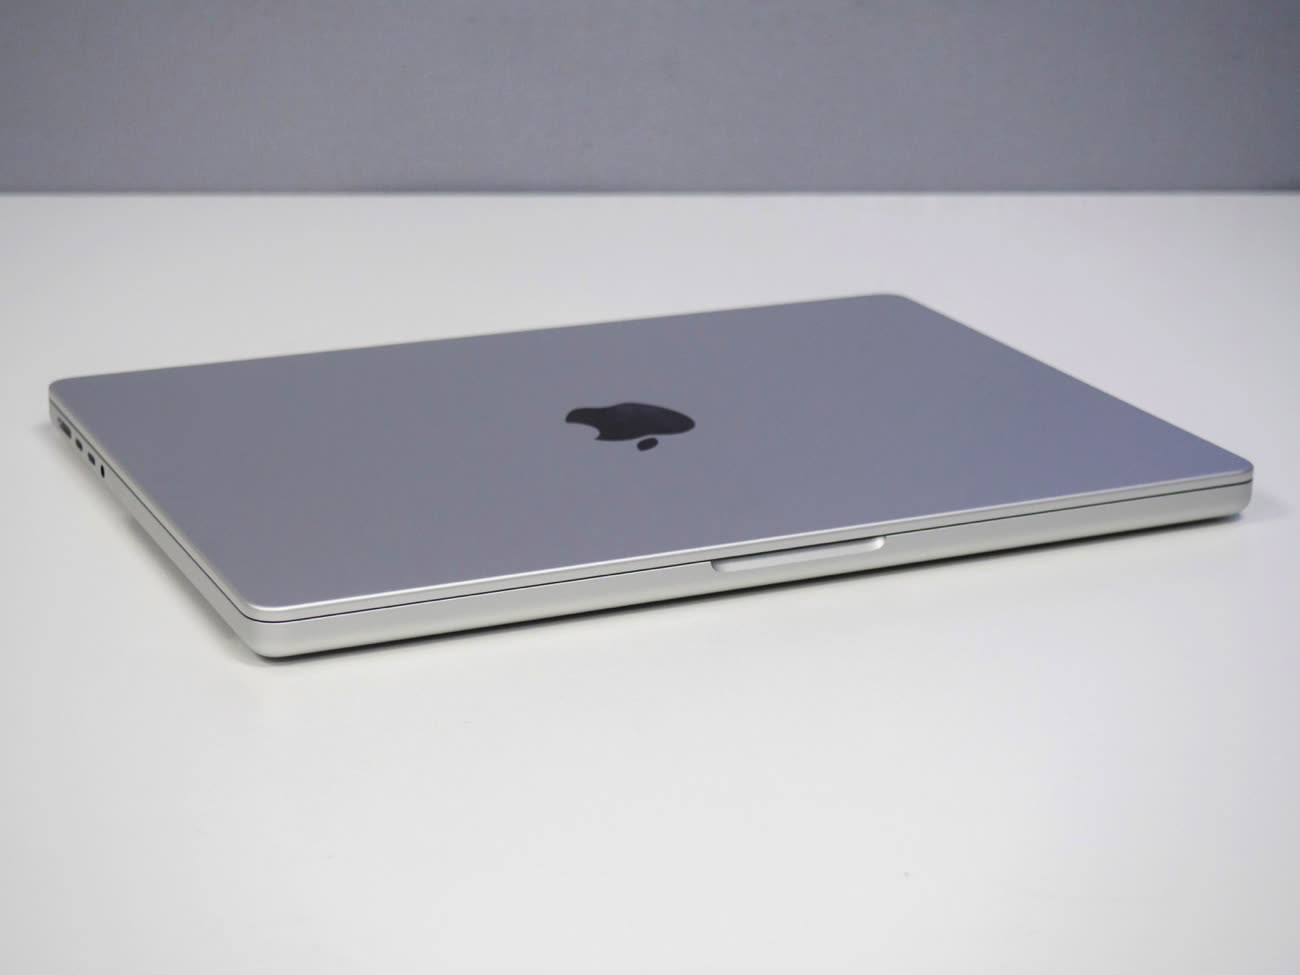 APPLE iMac 21,5 - PC portable reconditionné - Core i5 4570R - 8 Go - 1To  Pas Cher